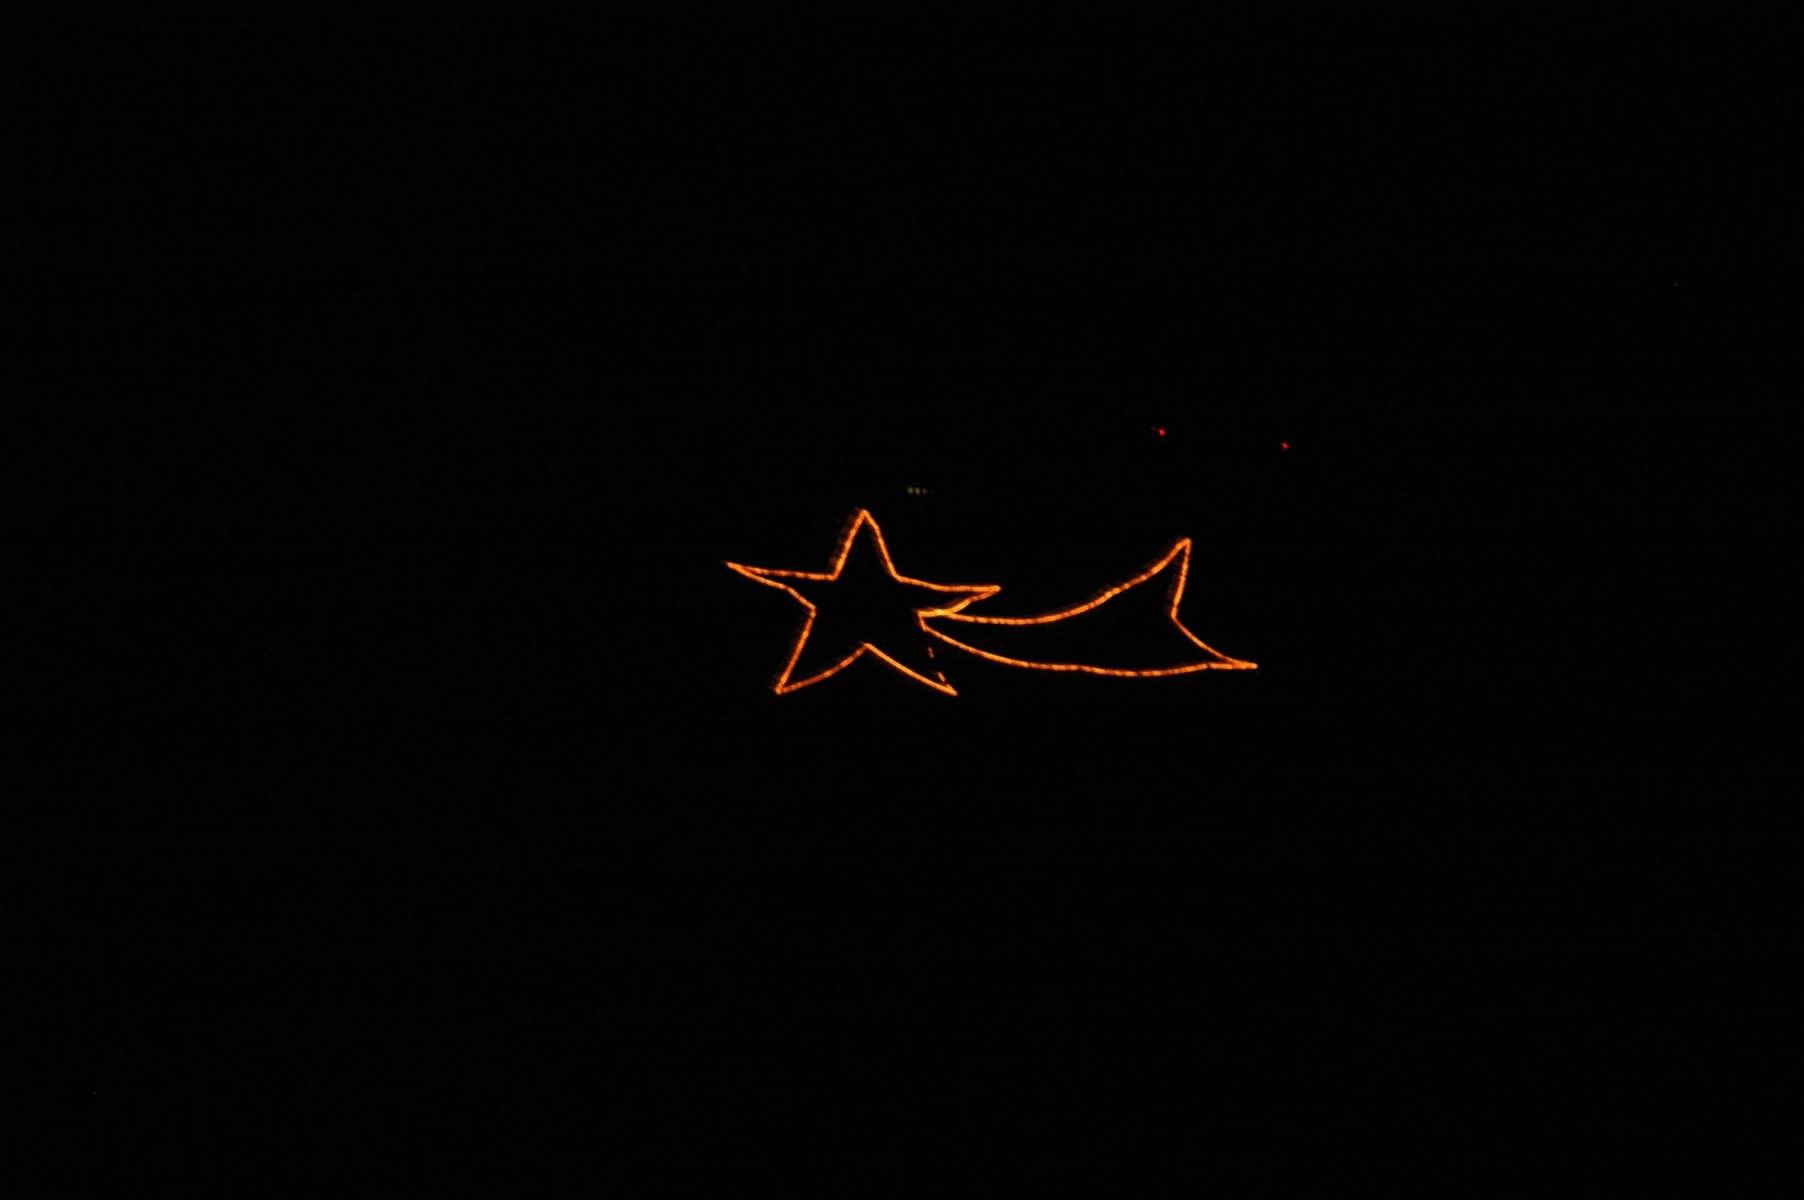 Nyon - 20 decembre 2006 - Etoile lumineuse sur la Dole. ©Stephanie Thomet